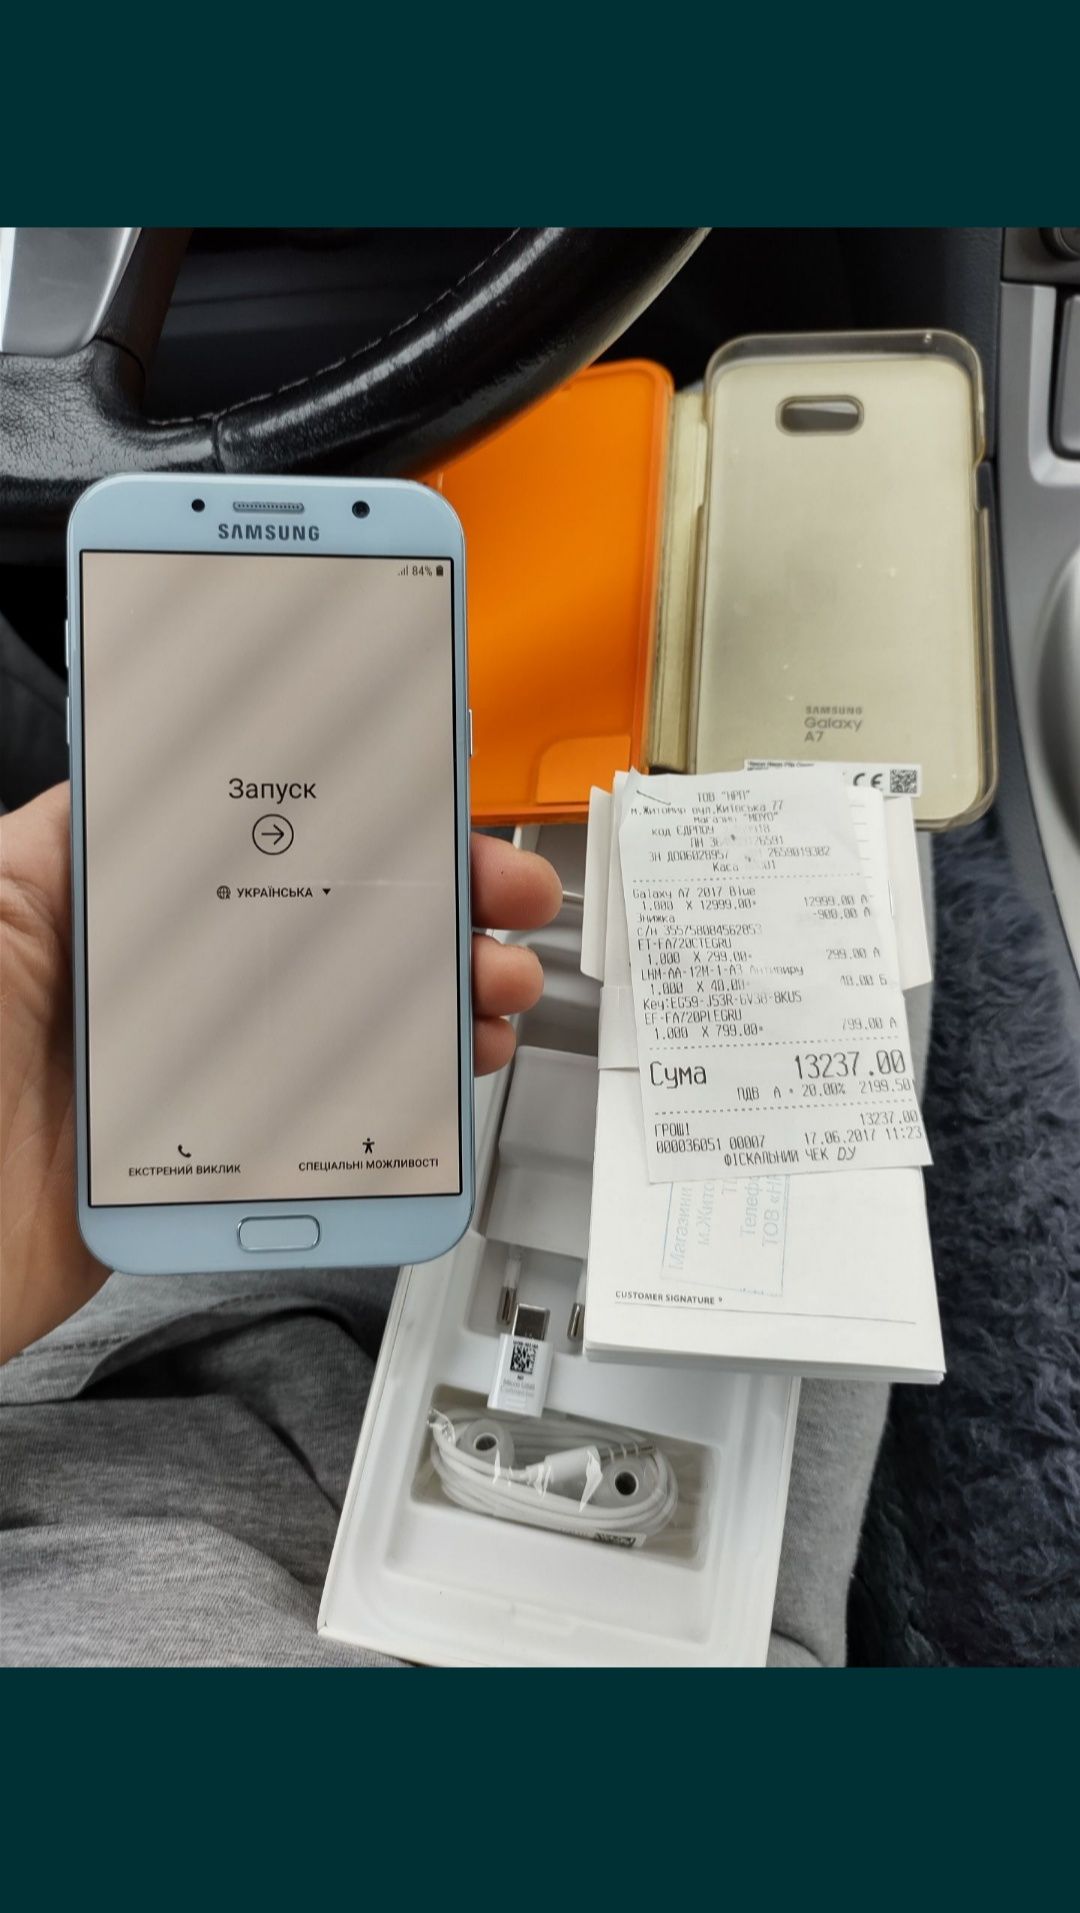 Samsung Galaxy A7 Dual SIM IP68